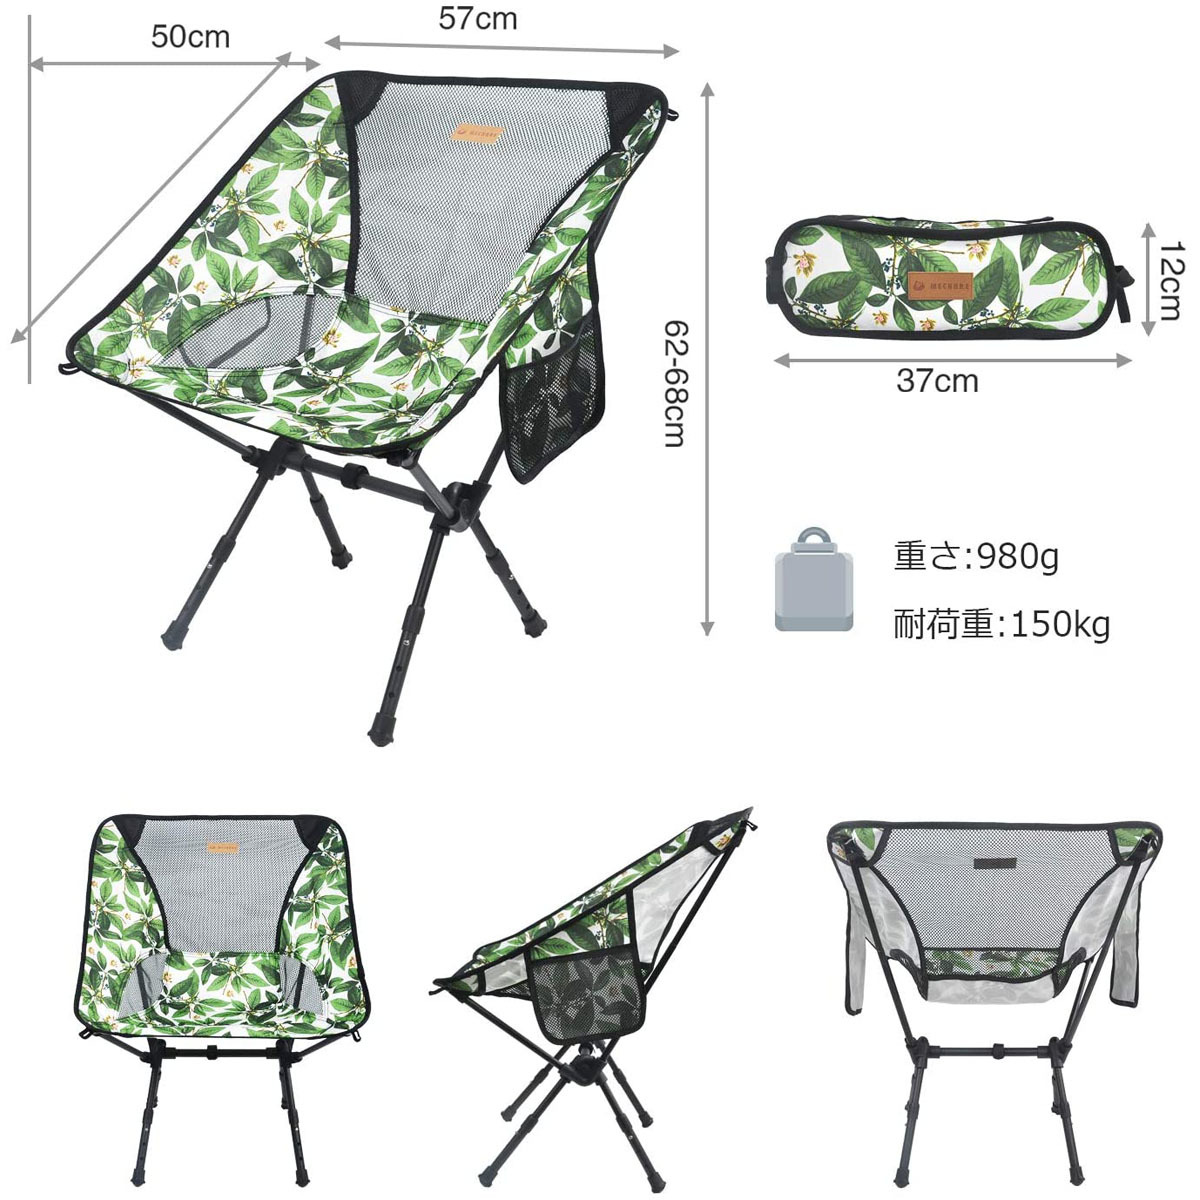 アウトドアチェア 折りたたみ椅子 軽量 コンパクト 組み立て簡単 3段階の高さ調節可能 耐荷重約150kg キャンプ 花柄